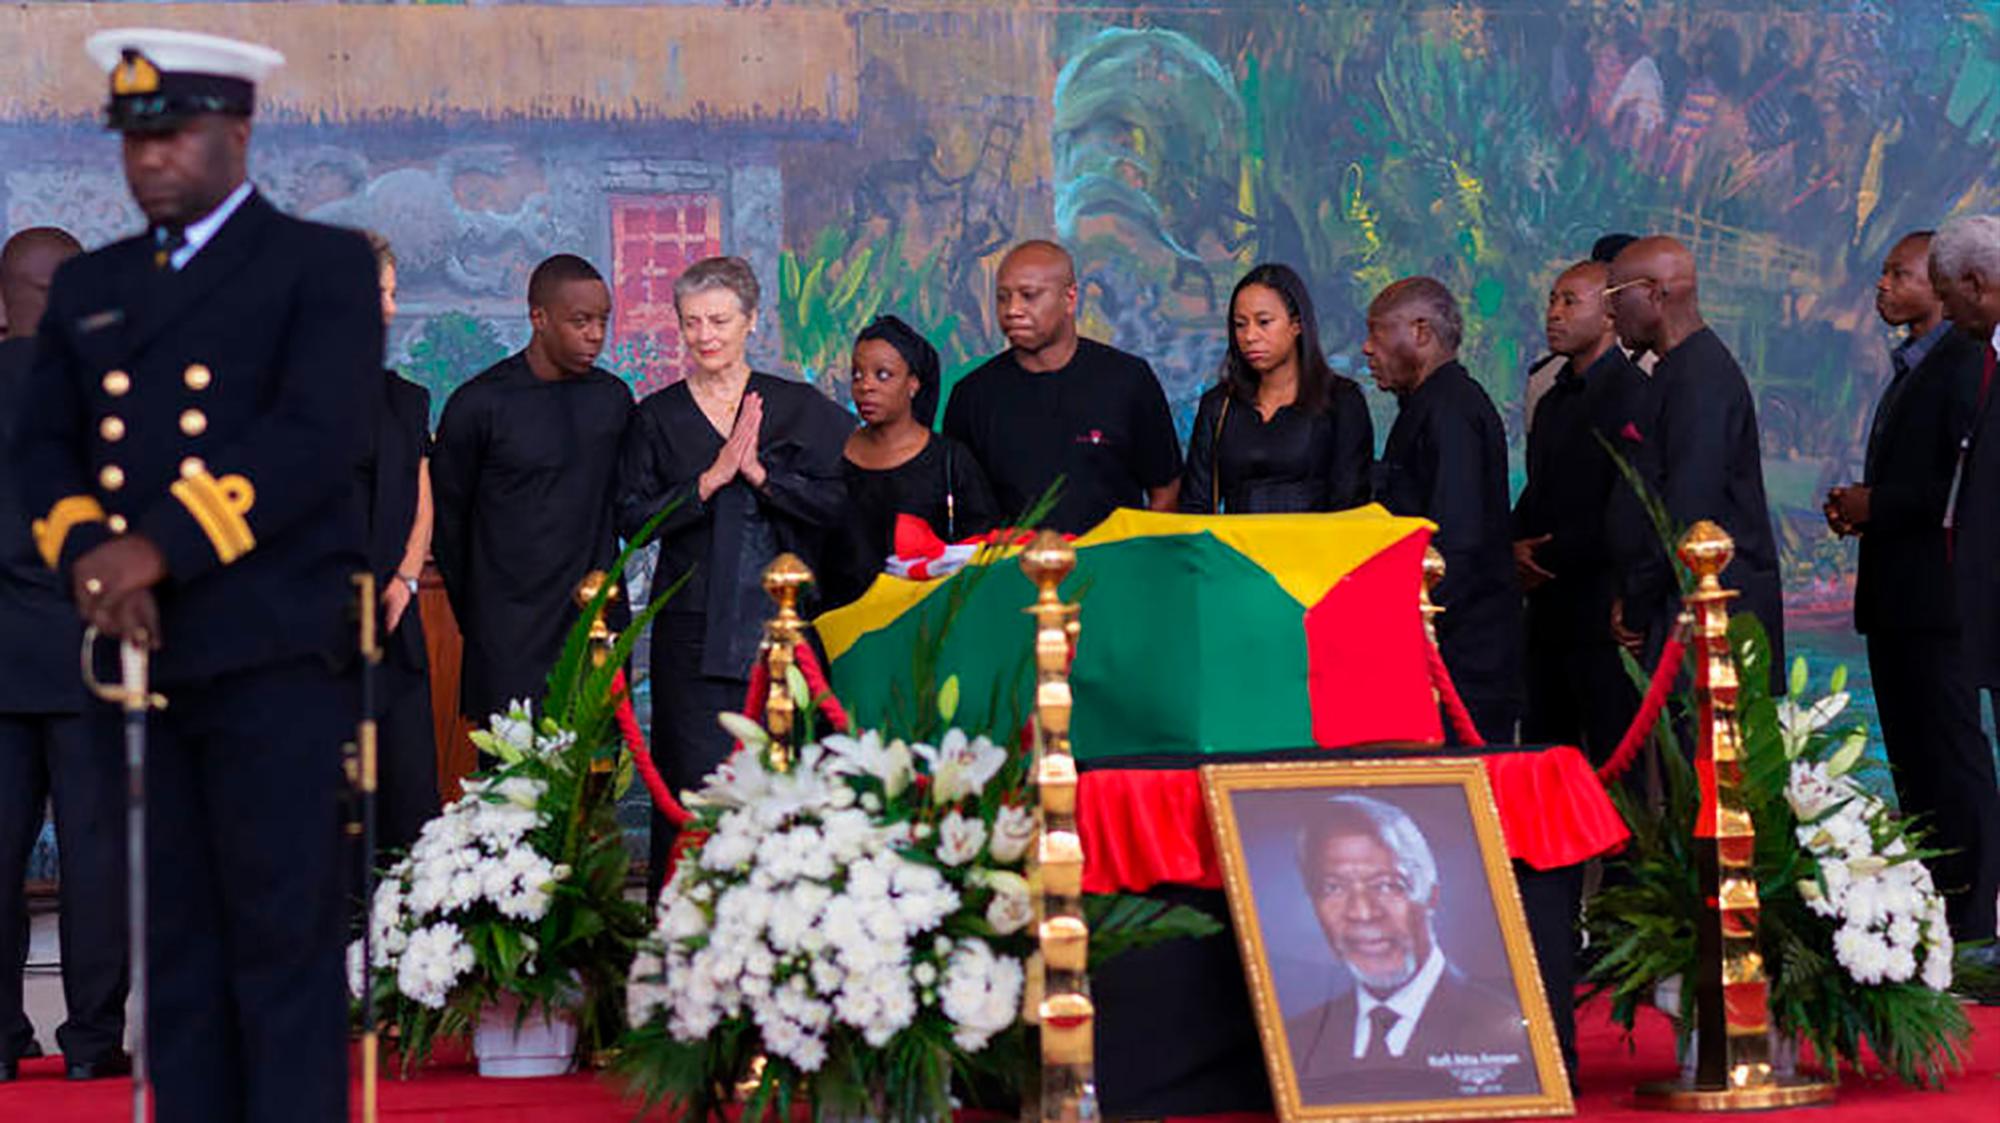 La realeza europea viajó hasta África para asistir al multitudinario funeral del ex secretario general Kofi Annan . La realeza europea viajó hasta África para asistir al multitudinario funeral del ex secretario general de la ONU, que falleció el 18 de agosto de 2018 tras una corta enfermedad